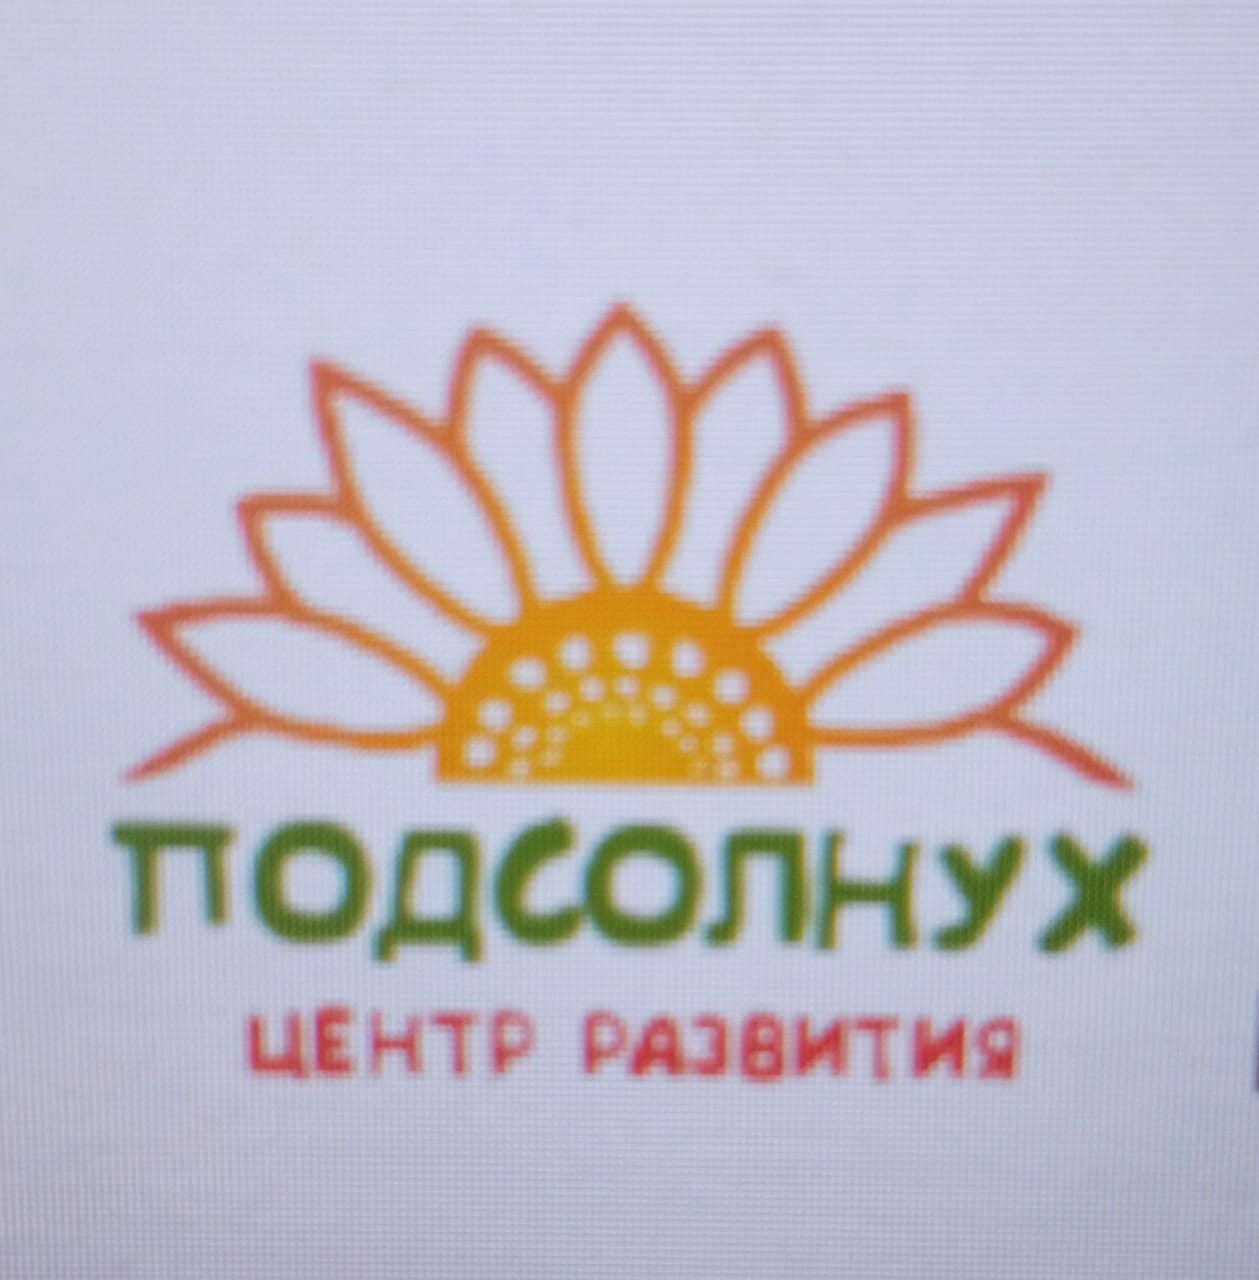 Центр развития Подсолнух Логотип(logo)